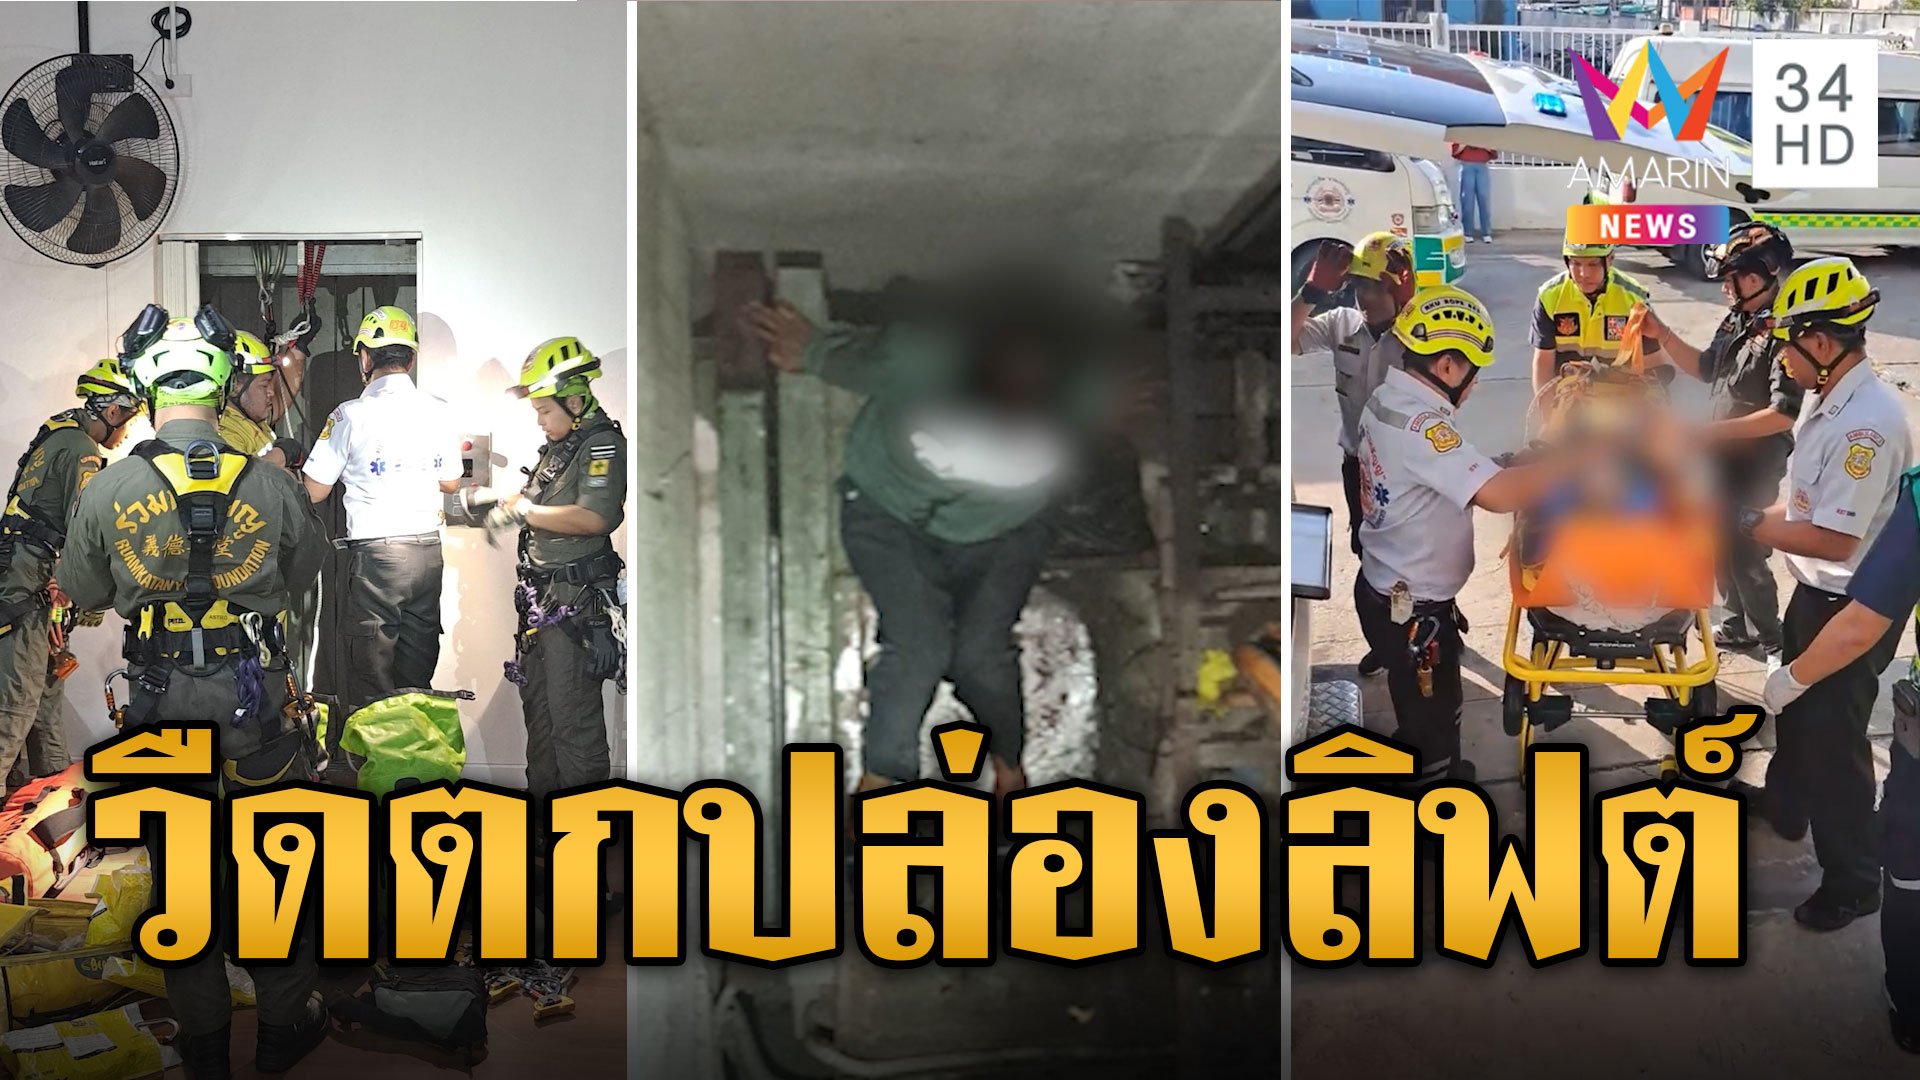 ช่วยระทึก! กู้ภัยโรยตัวช่วยแม่บ้าน ร่วงตกปล่องลิฟต์ | ข่าวเที่ยงอมรินทร์ | 5 ม.ค. 67 | AMARIN TVHD34